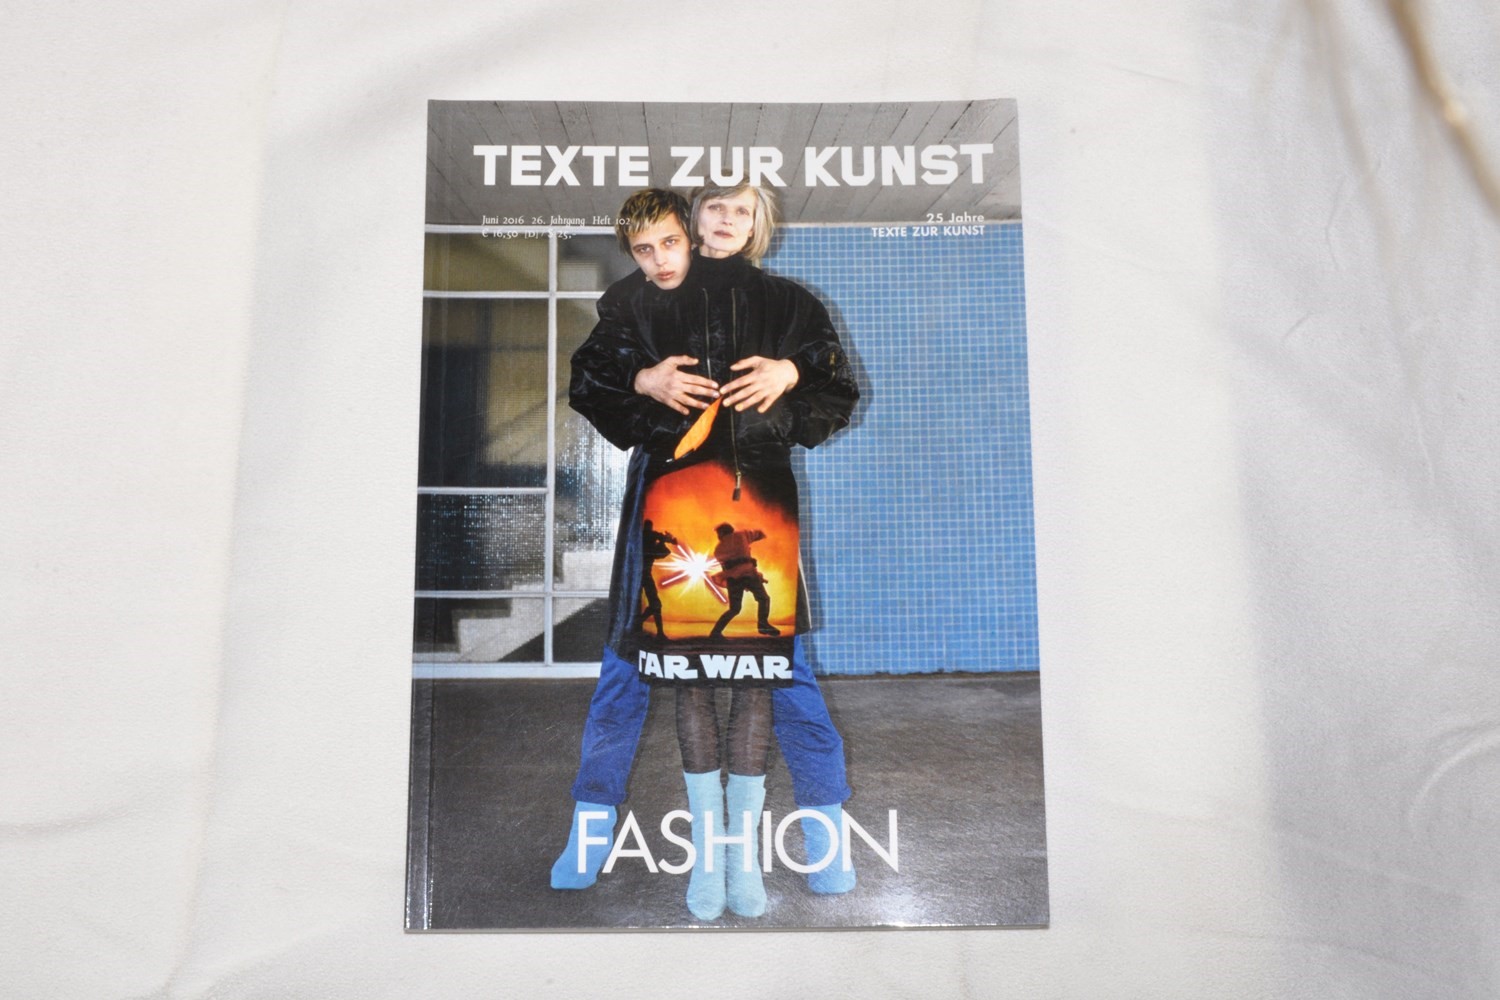 Texte zur Kunst – “Fashion”, Issue 102